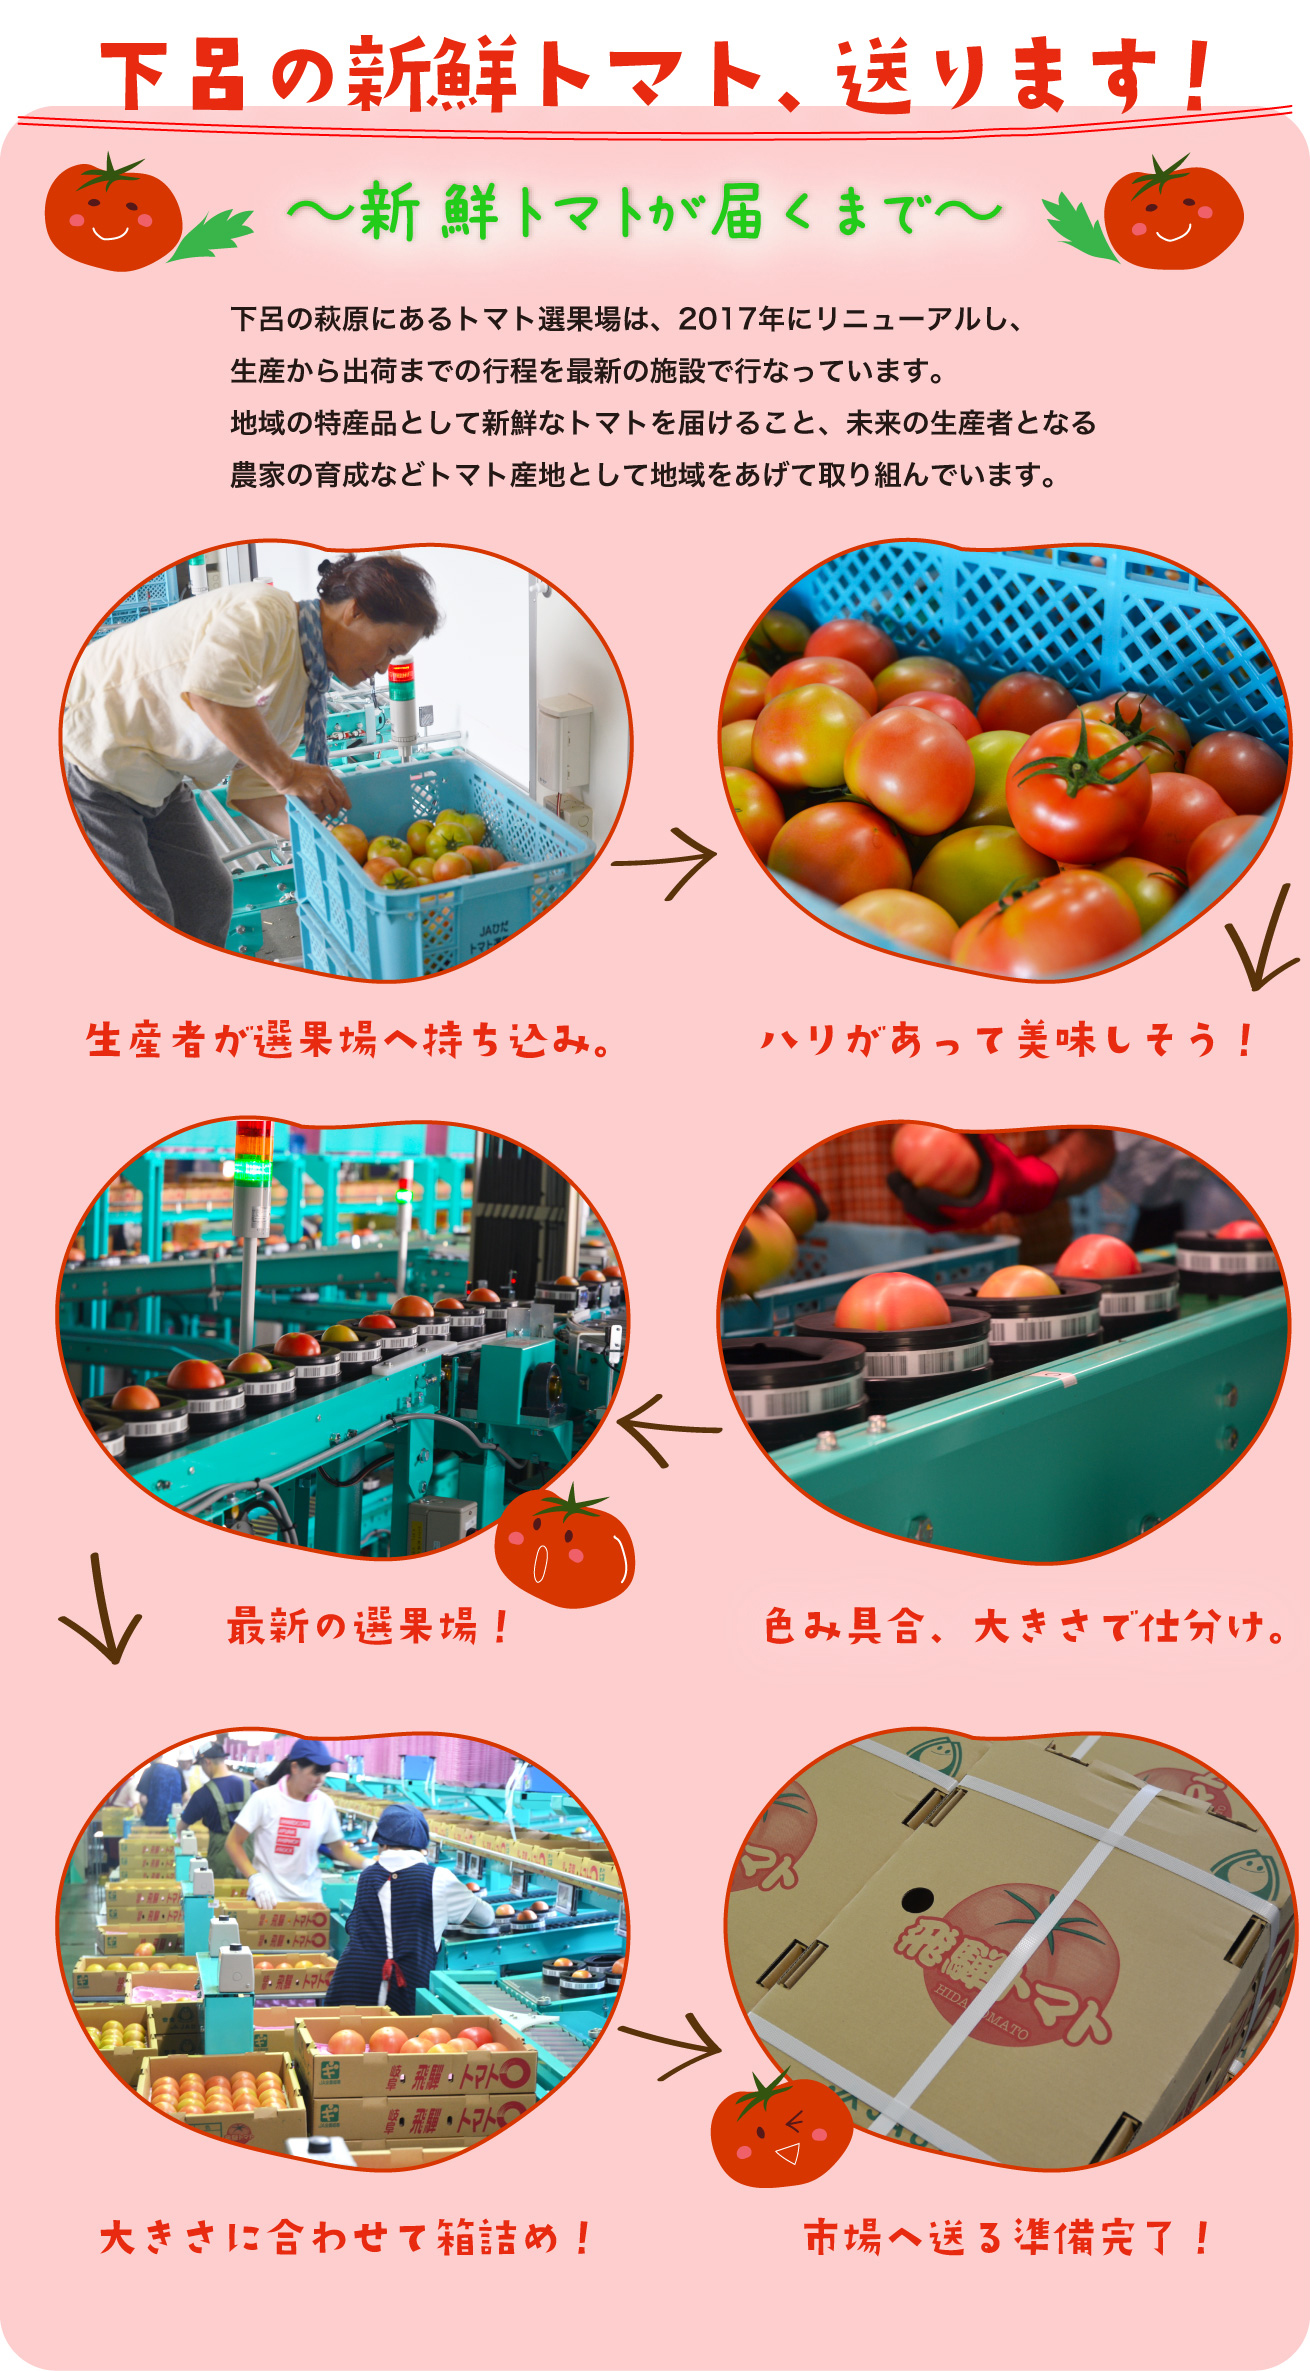 下呂の新鮮トマト、送ります！　下呂の萩原にあるトマト選果場は、2017年にリニューアルし、生産から出荷までの行程を最新の施設で行なっています。地域の特産品として新鮮なトマトを届けること、未来の生産者となる農家の育成などトマト産地として地域をあげて取り組んでいます。